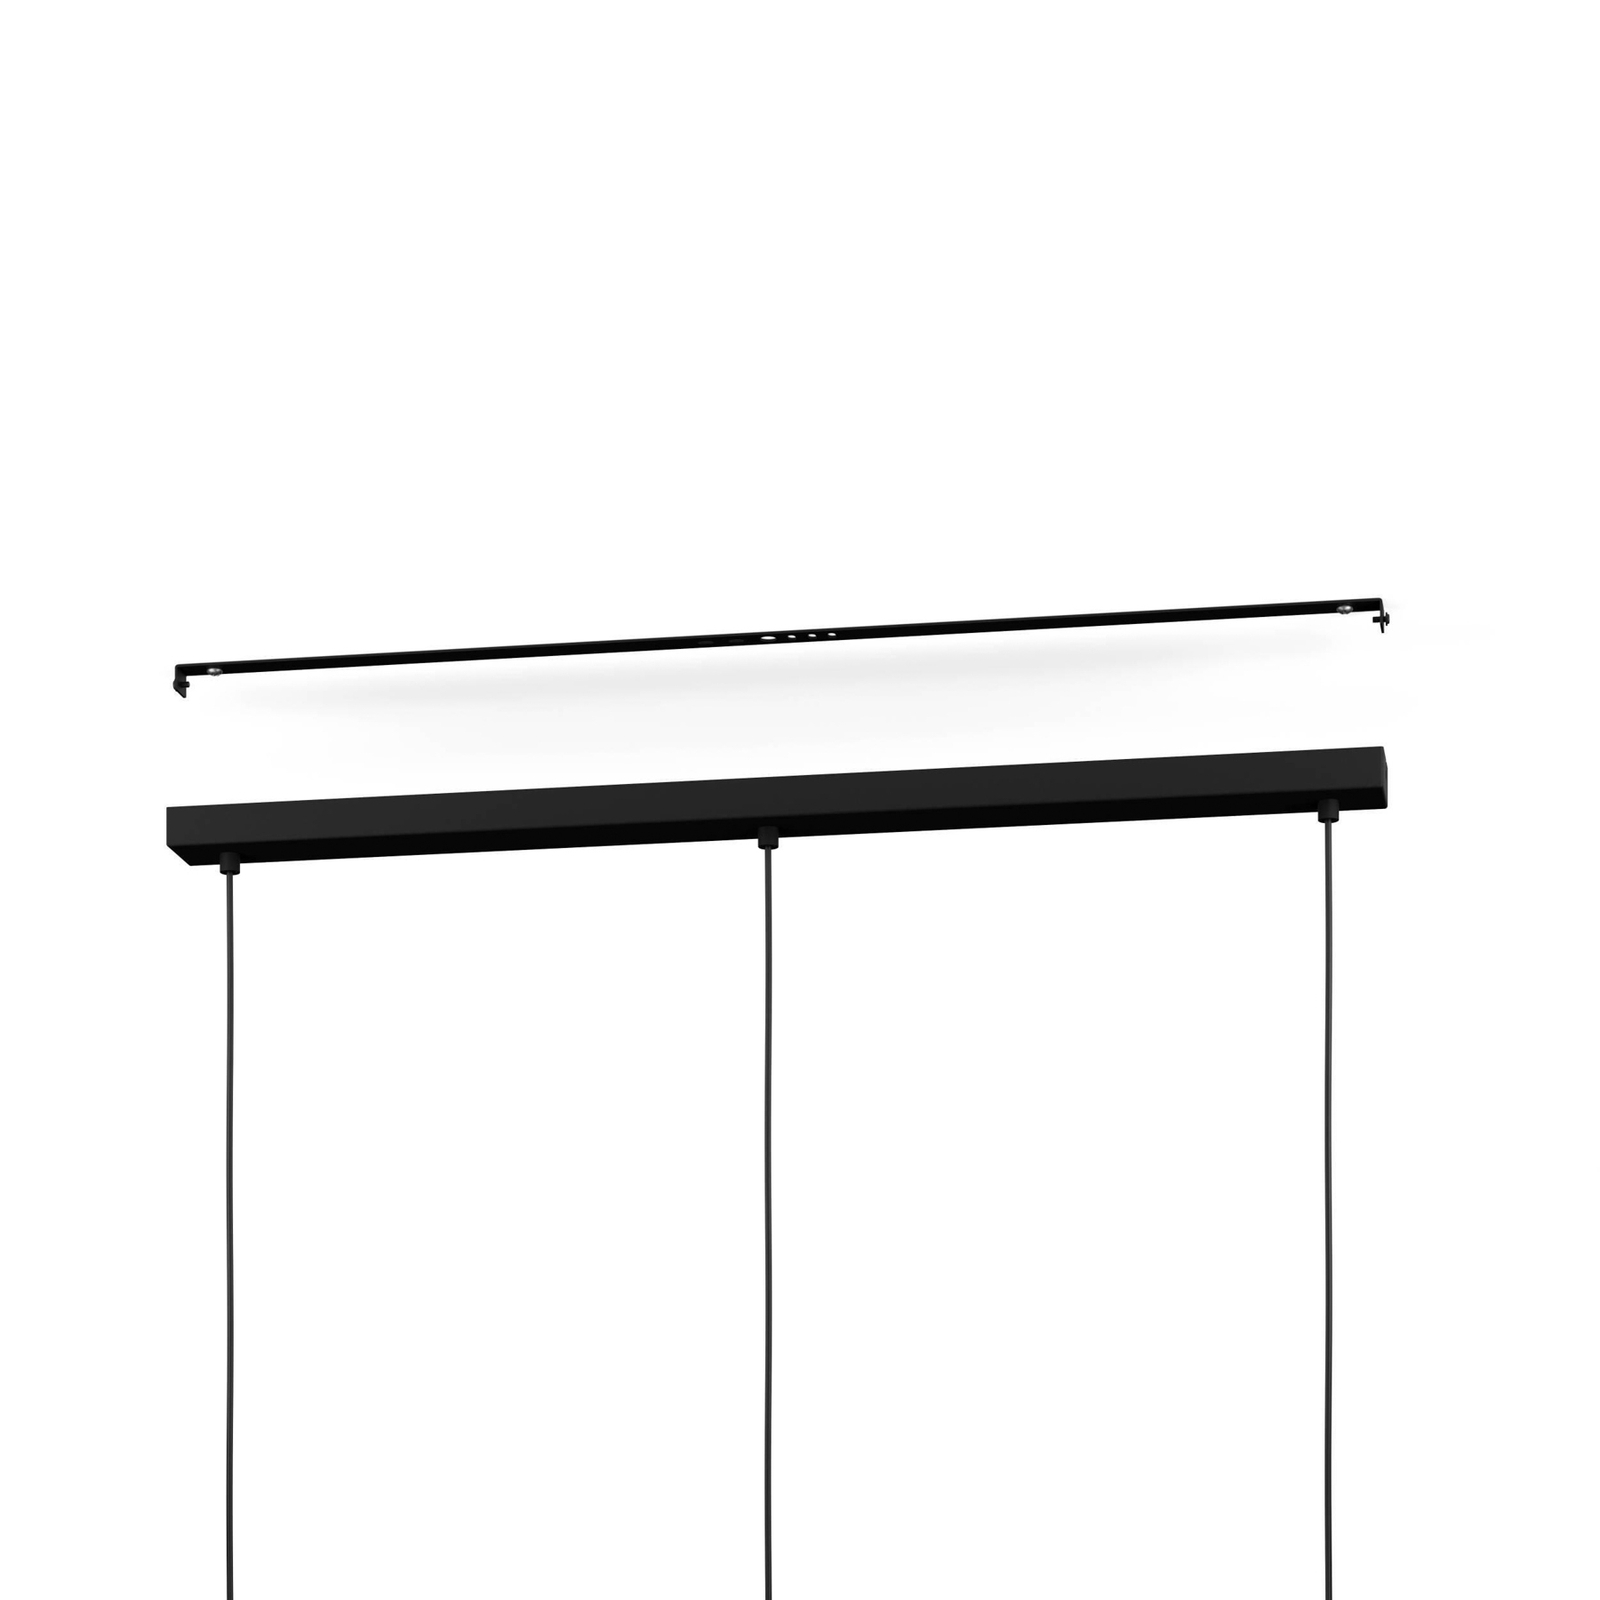 Candeeiro suspenso Matlock, comprimento 90 cm, cinzento/preto, 3 lâmpadas.